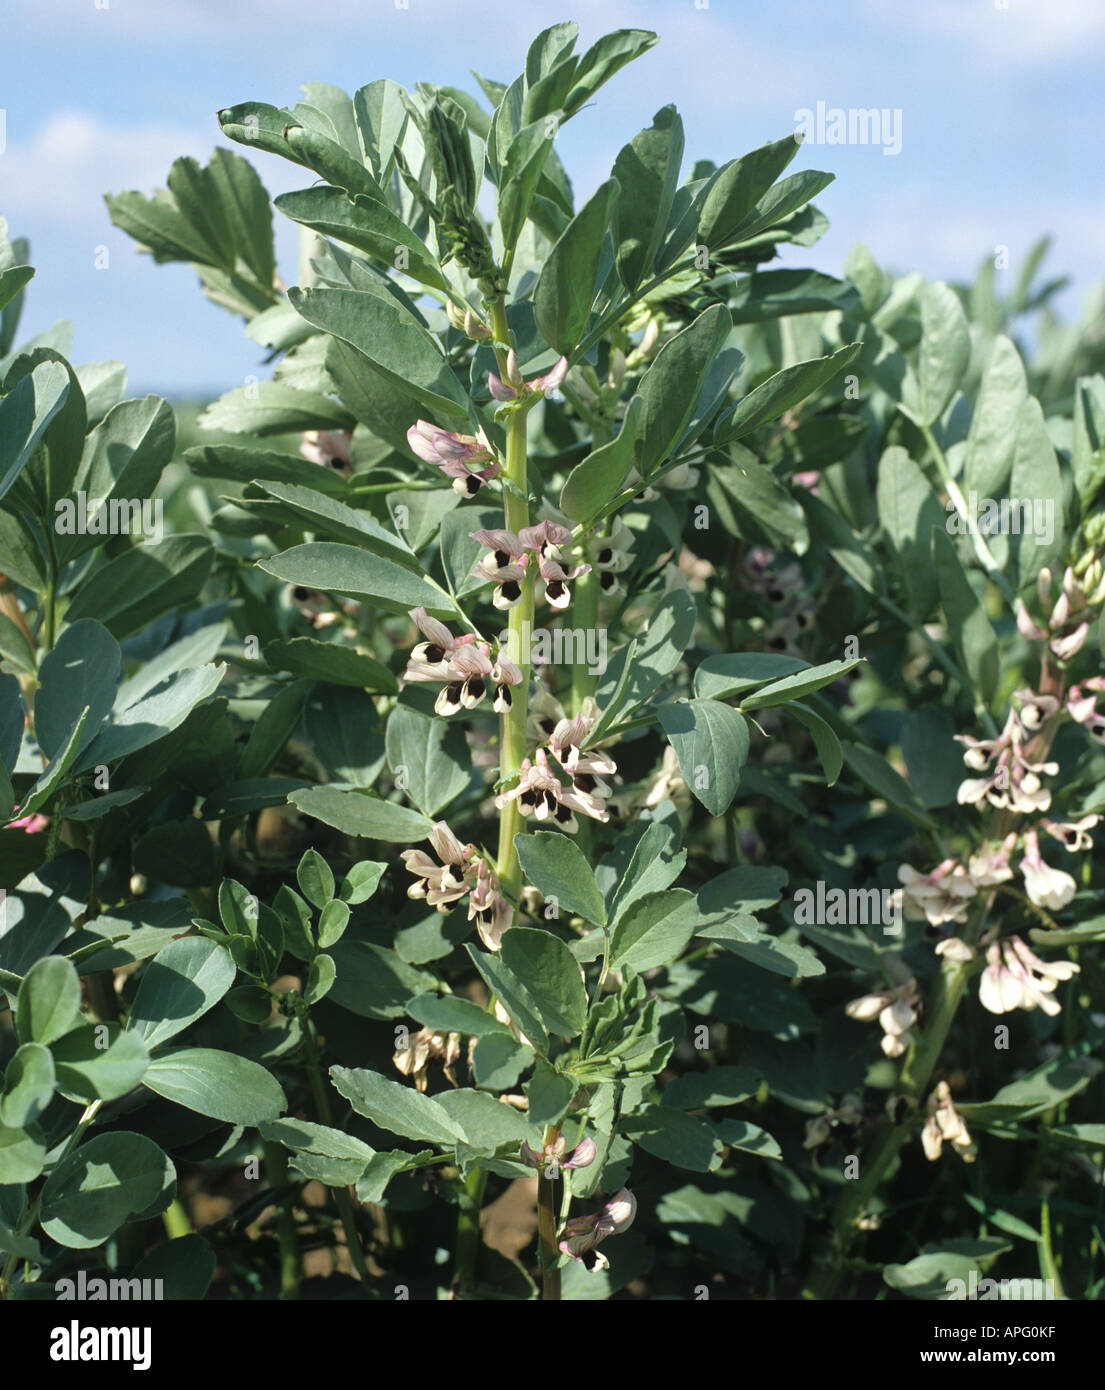 Field bean crop in flower Stock Photo - Alamy